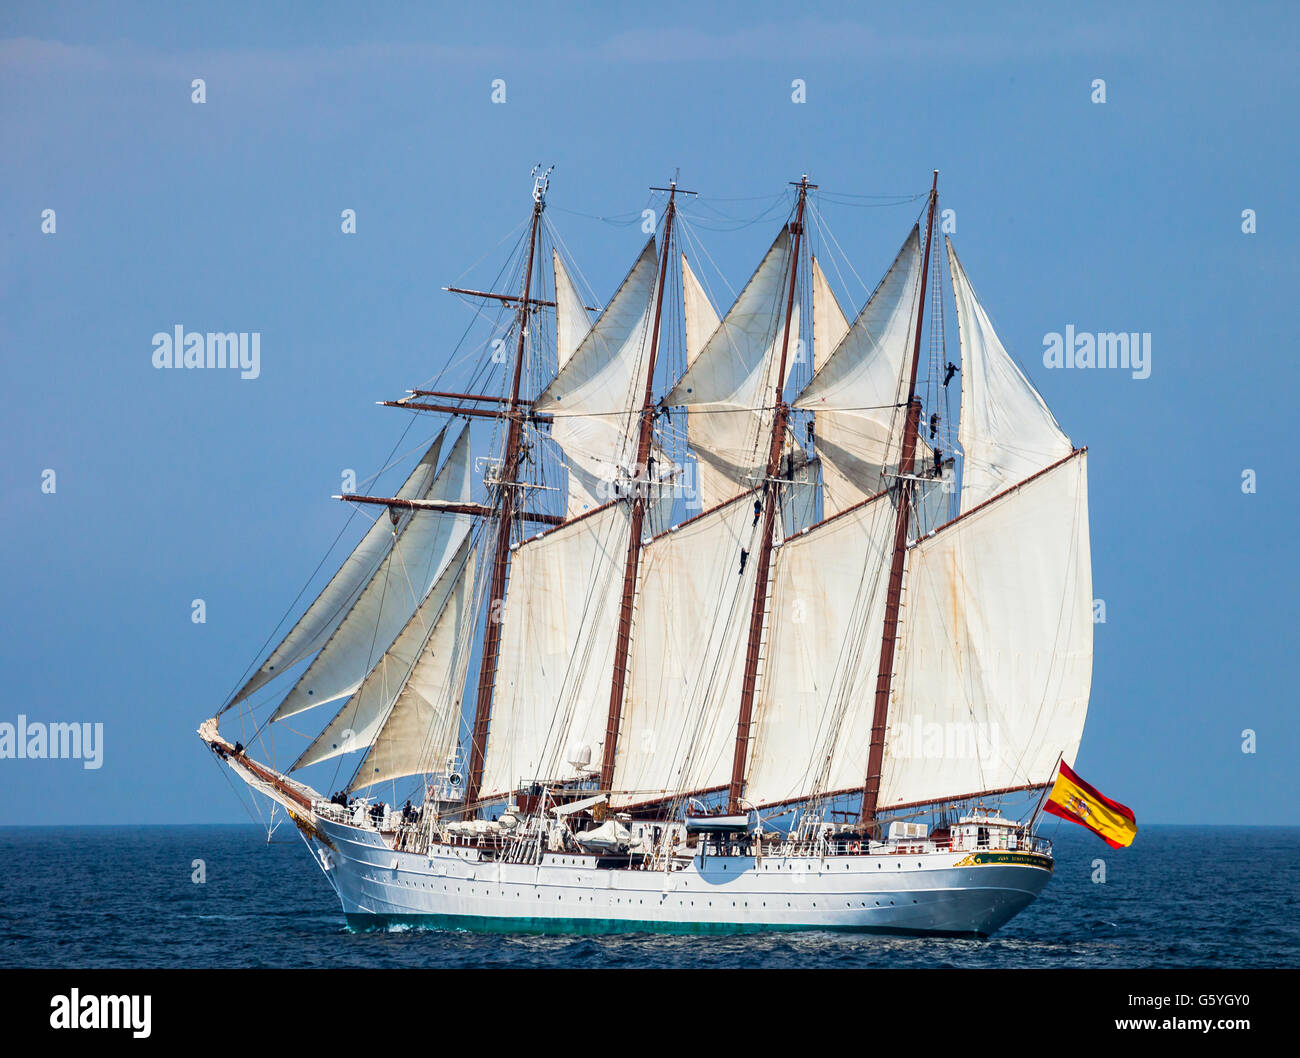 CADIZ, Spanien - APR 01: Spanische Marine Training, Kreuzfahrtschiff Juan Sebastian de Elcano Segel auf der 83. des Unterrichts mit Stockfoto